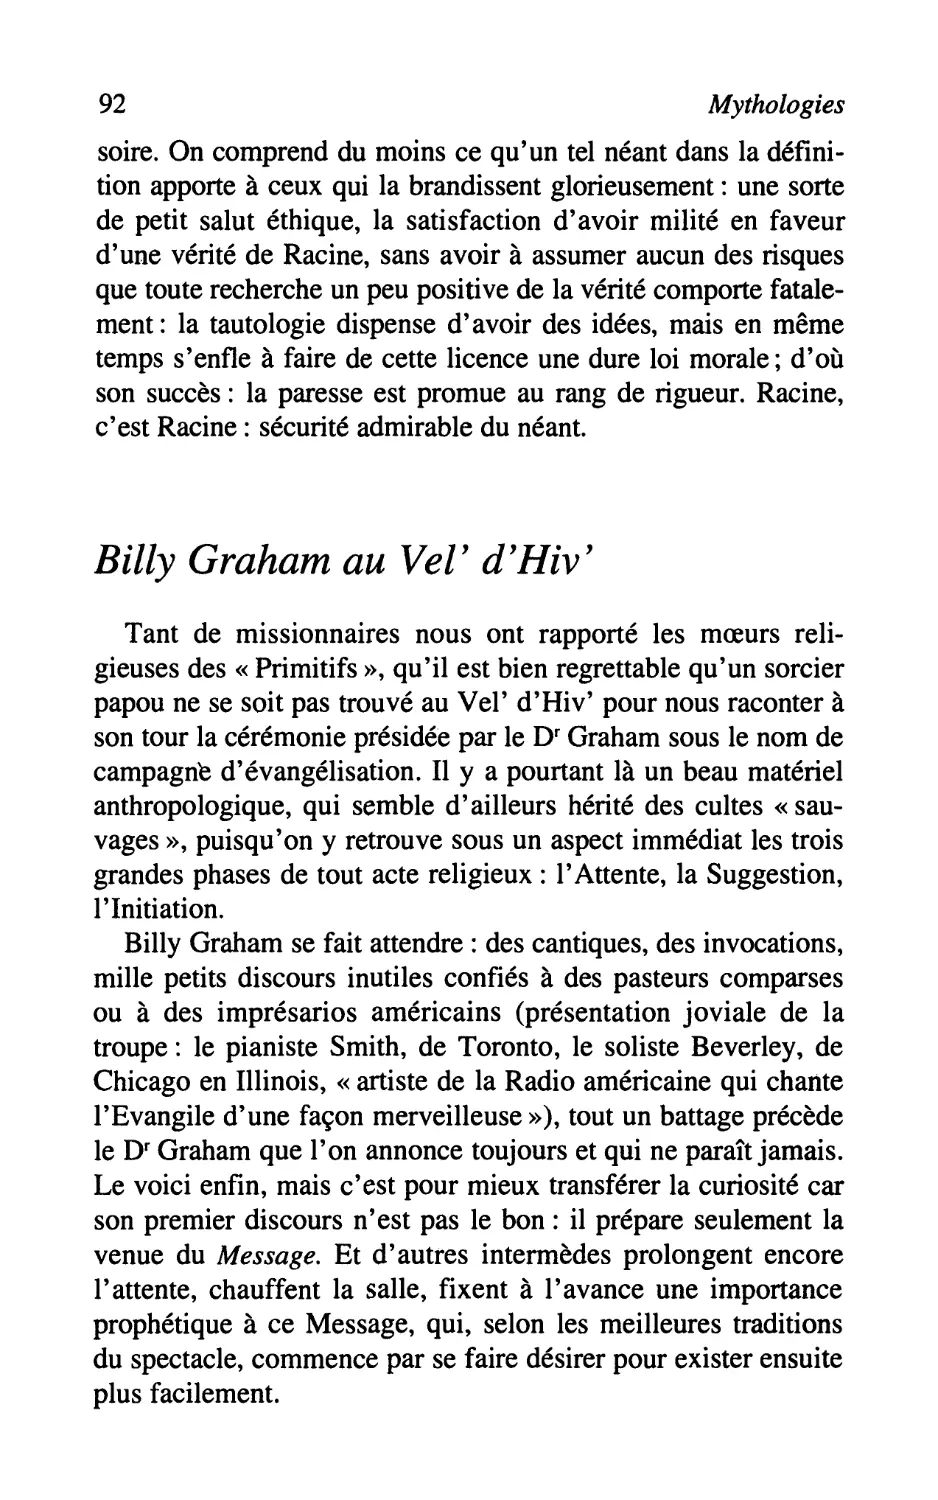 Billy Graham au VeV d'Hiv'